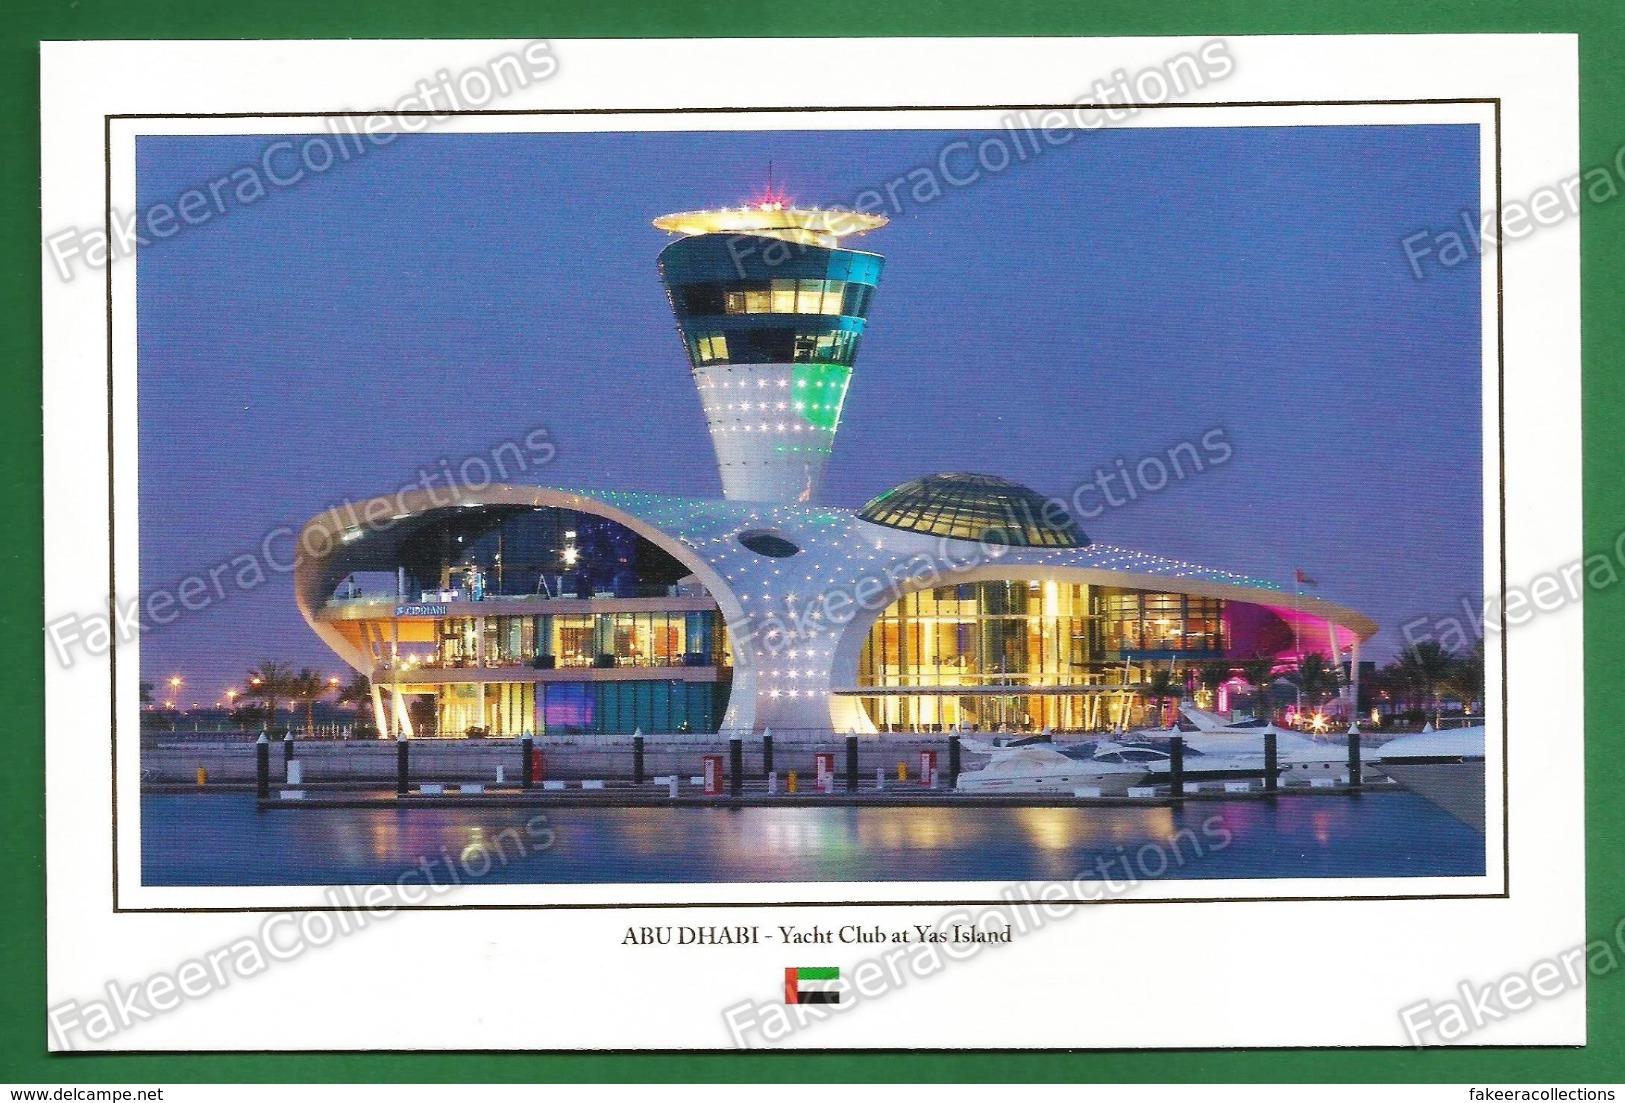 UNITED ARAB EMIRATES / UAE - ABU DHABI Yacht Club At Yas Island - Postcard # 45 - Unused As Scan - Ver. Arab. Emirate